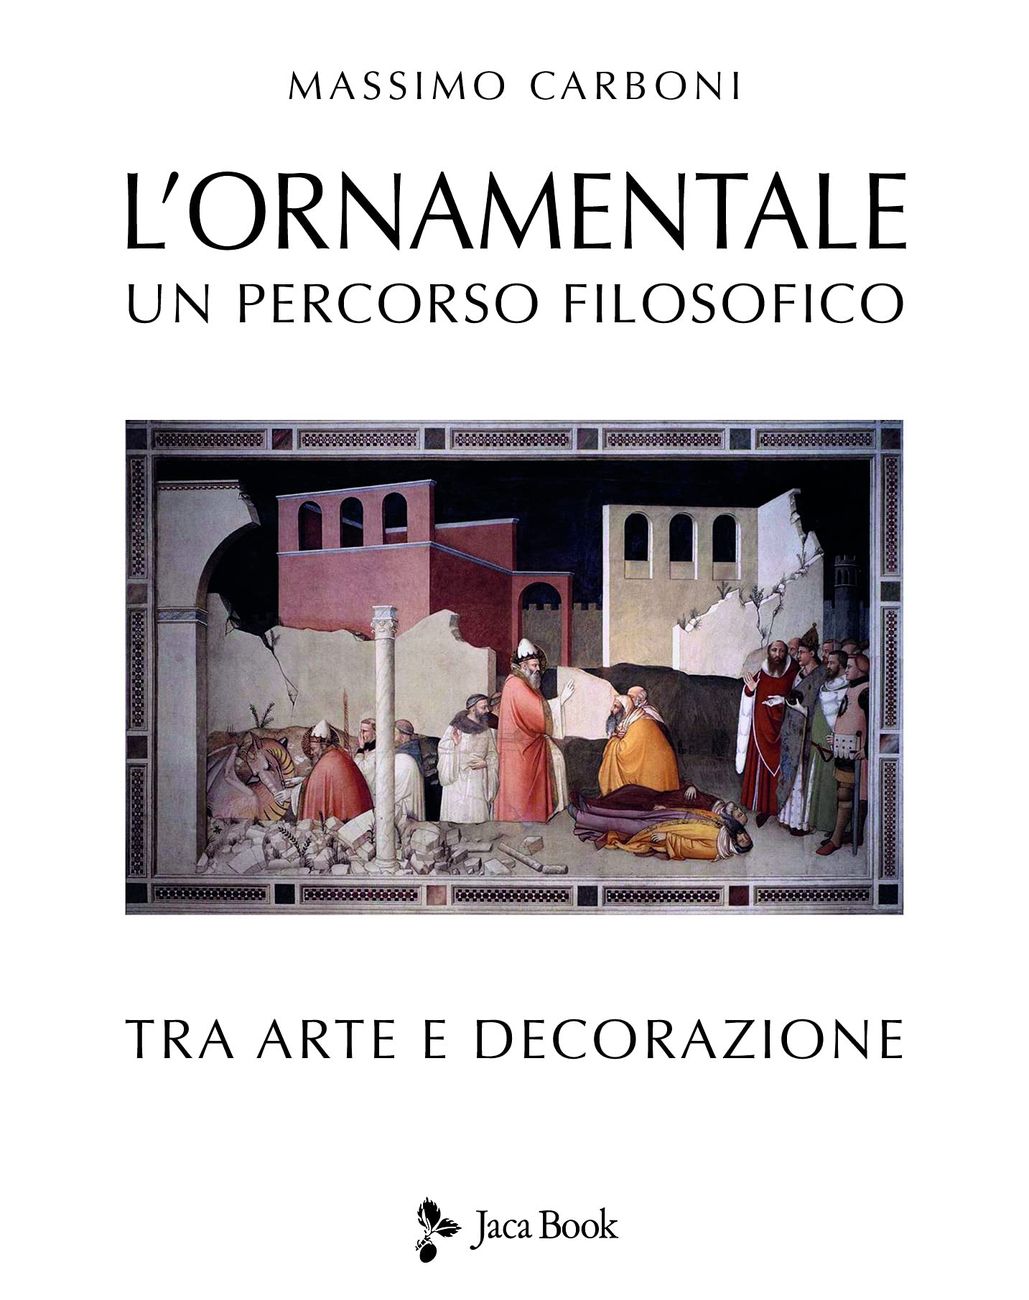 Massimo Carboni – L'ornamentale (Jaca Book, Milano 2021)